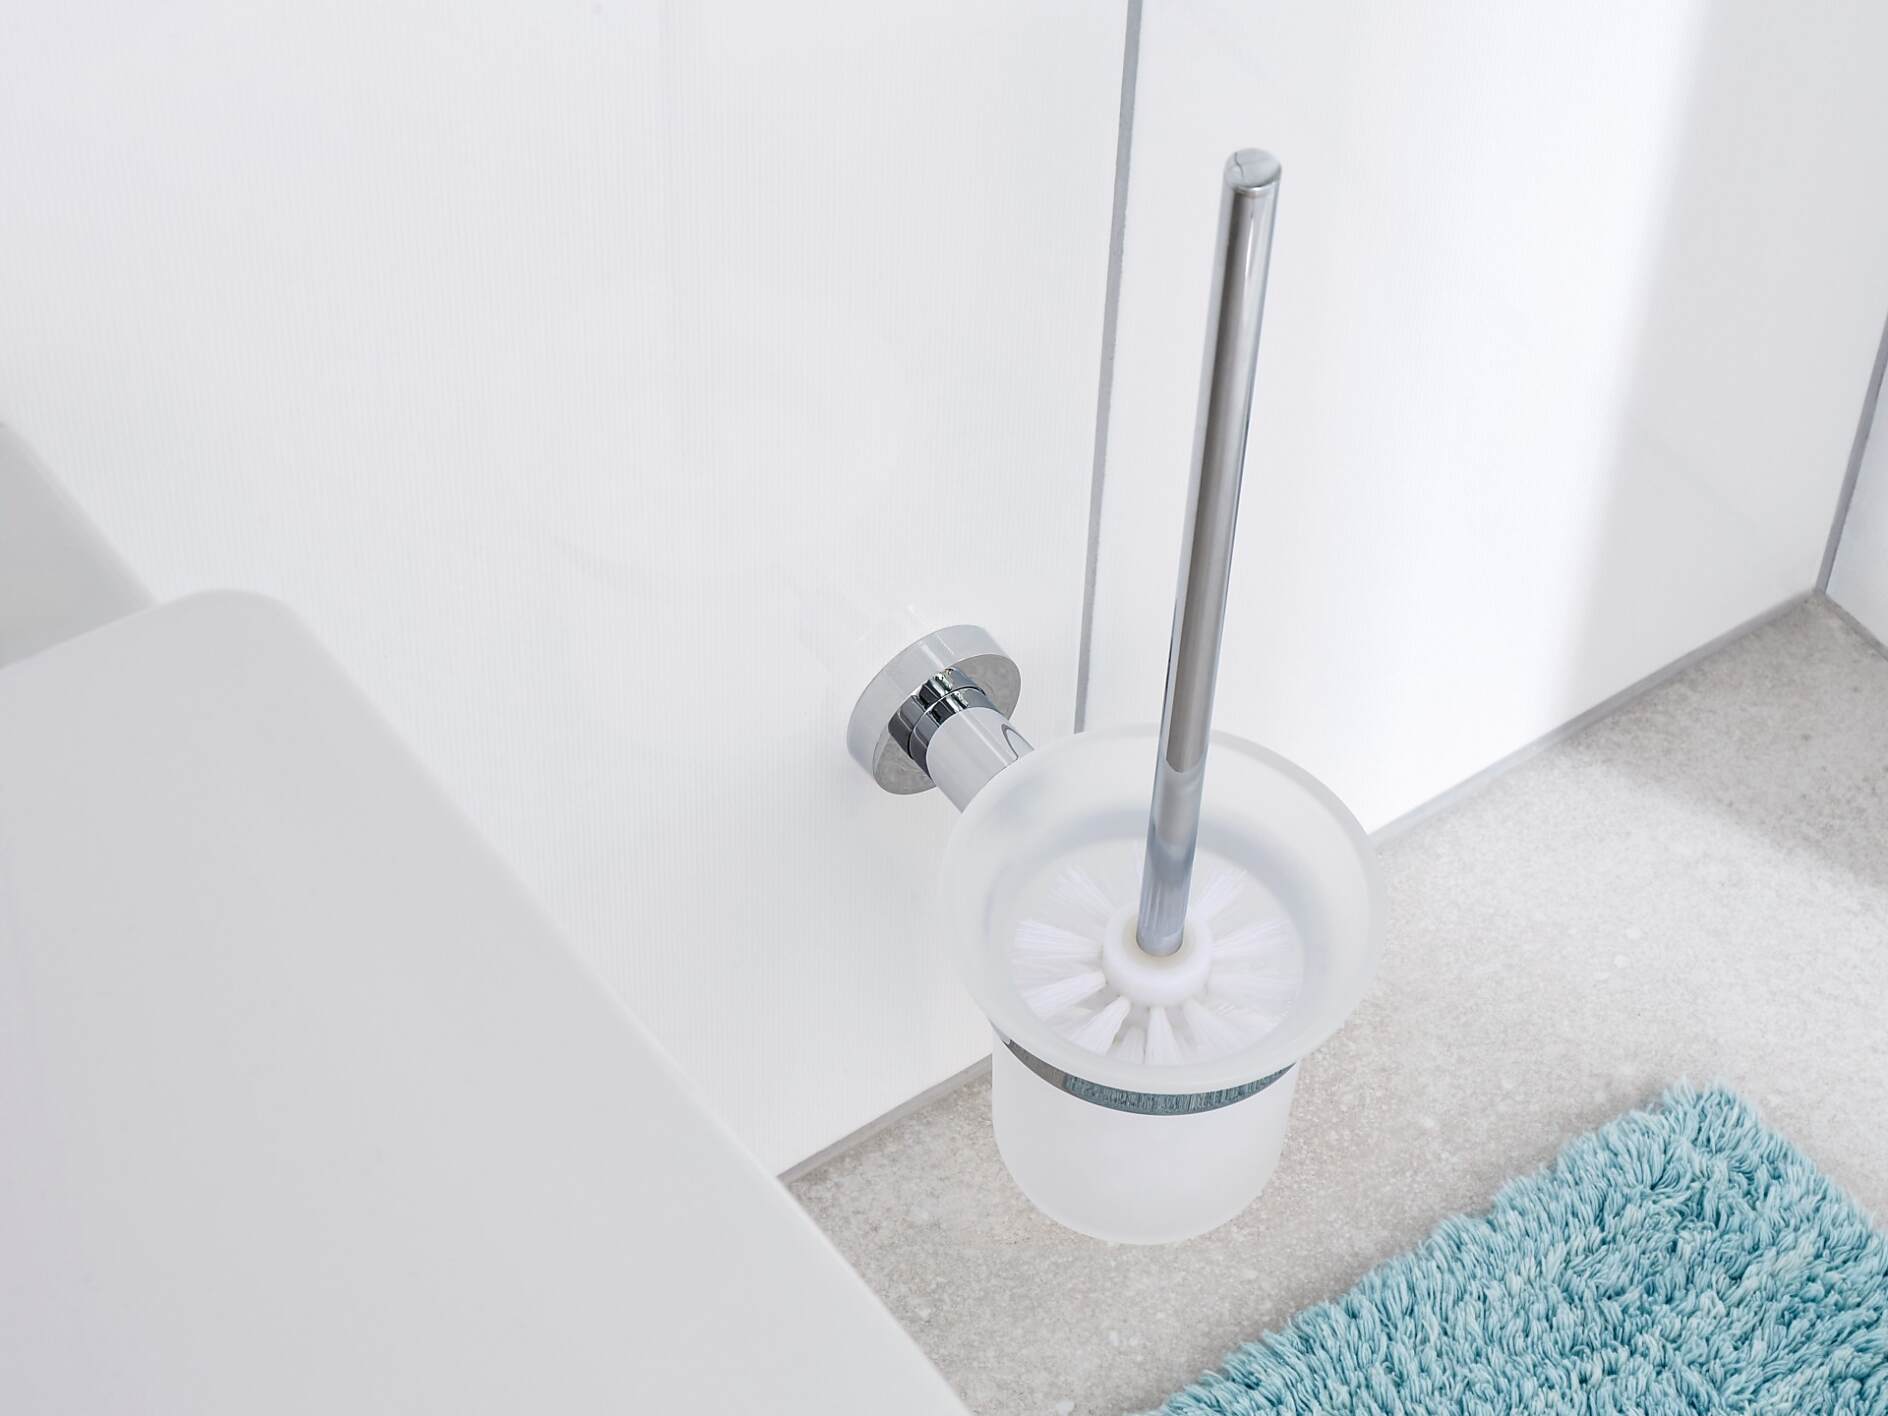 Convenient Toilet Brush Set Wall Mount or Floor Stand Waterproof Design